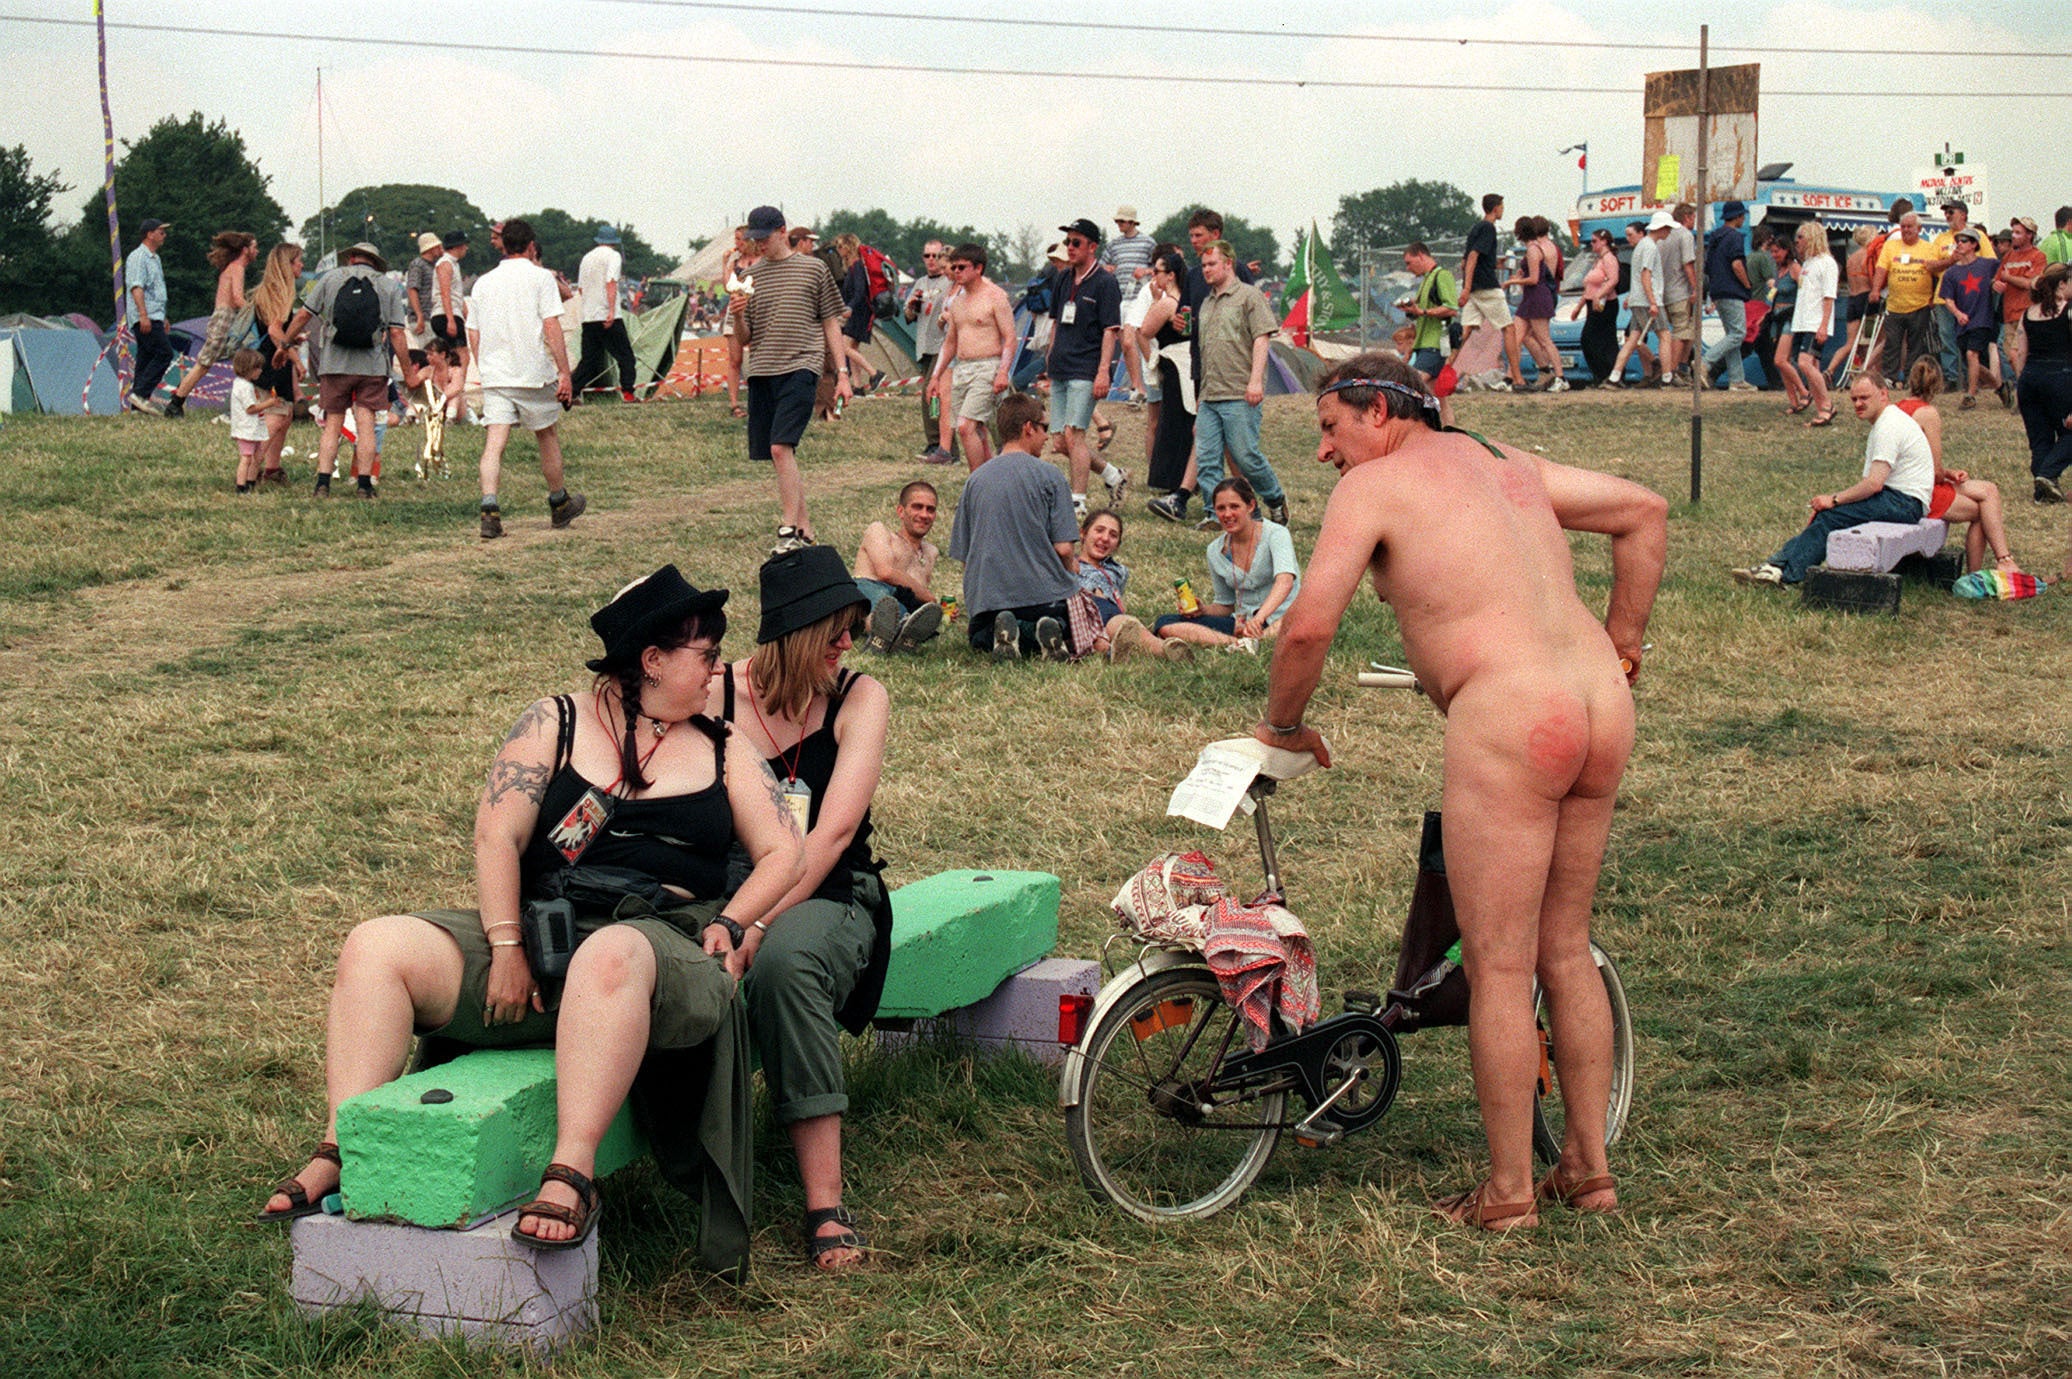 A naked festival goer in 1999